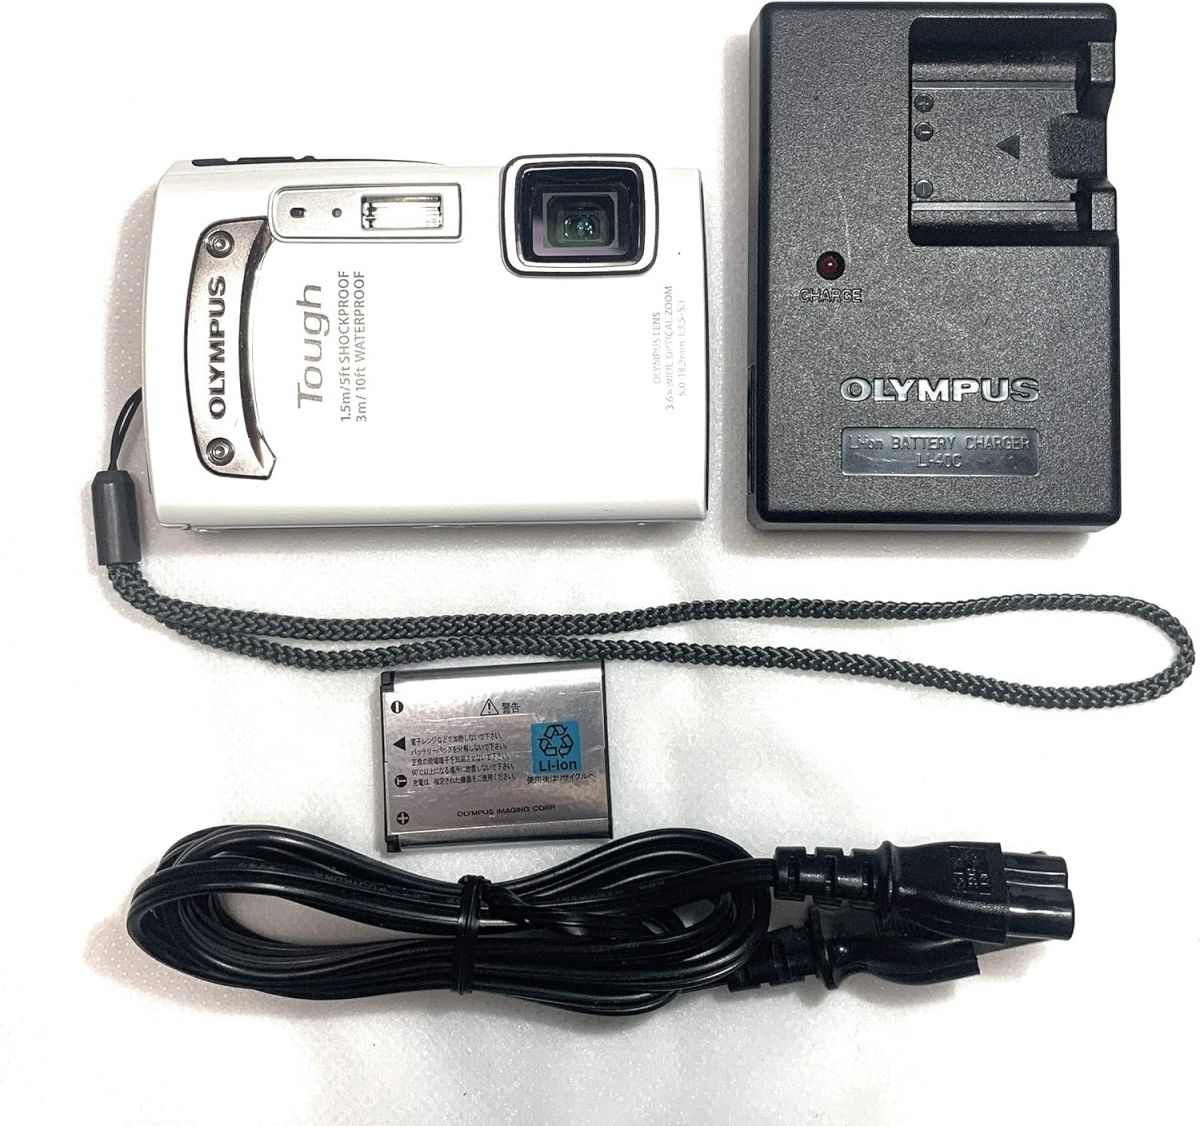 【中古】OLYMPUS 防水デジタルカメラ TOUGH TG-310 ホワイト 3m防水 1.5m耐落下衝撃 -10℃耐低温 1400万画素 3.6倍光学ズーム 2.7型液晶 TG-310 WHT